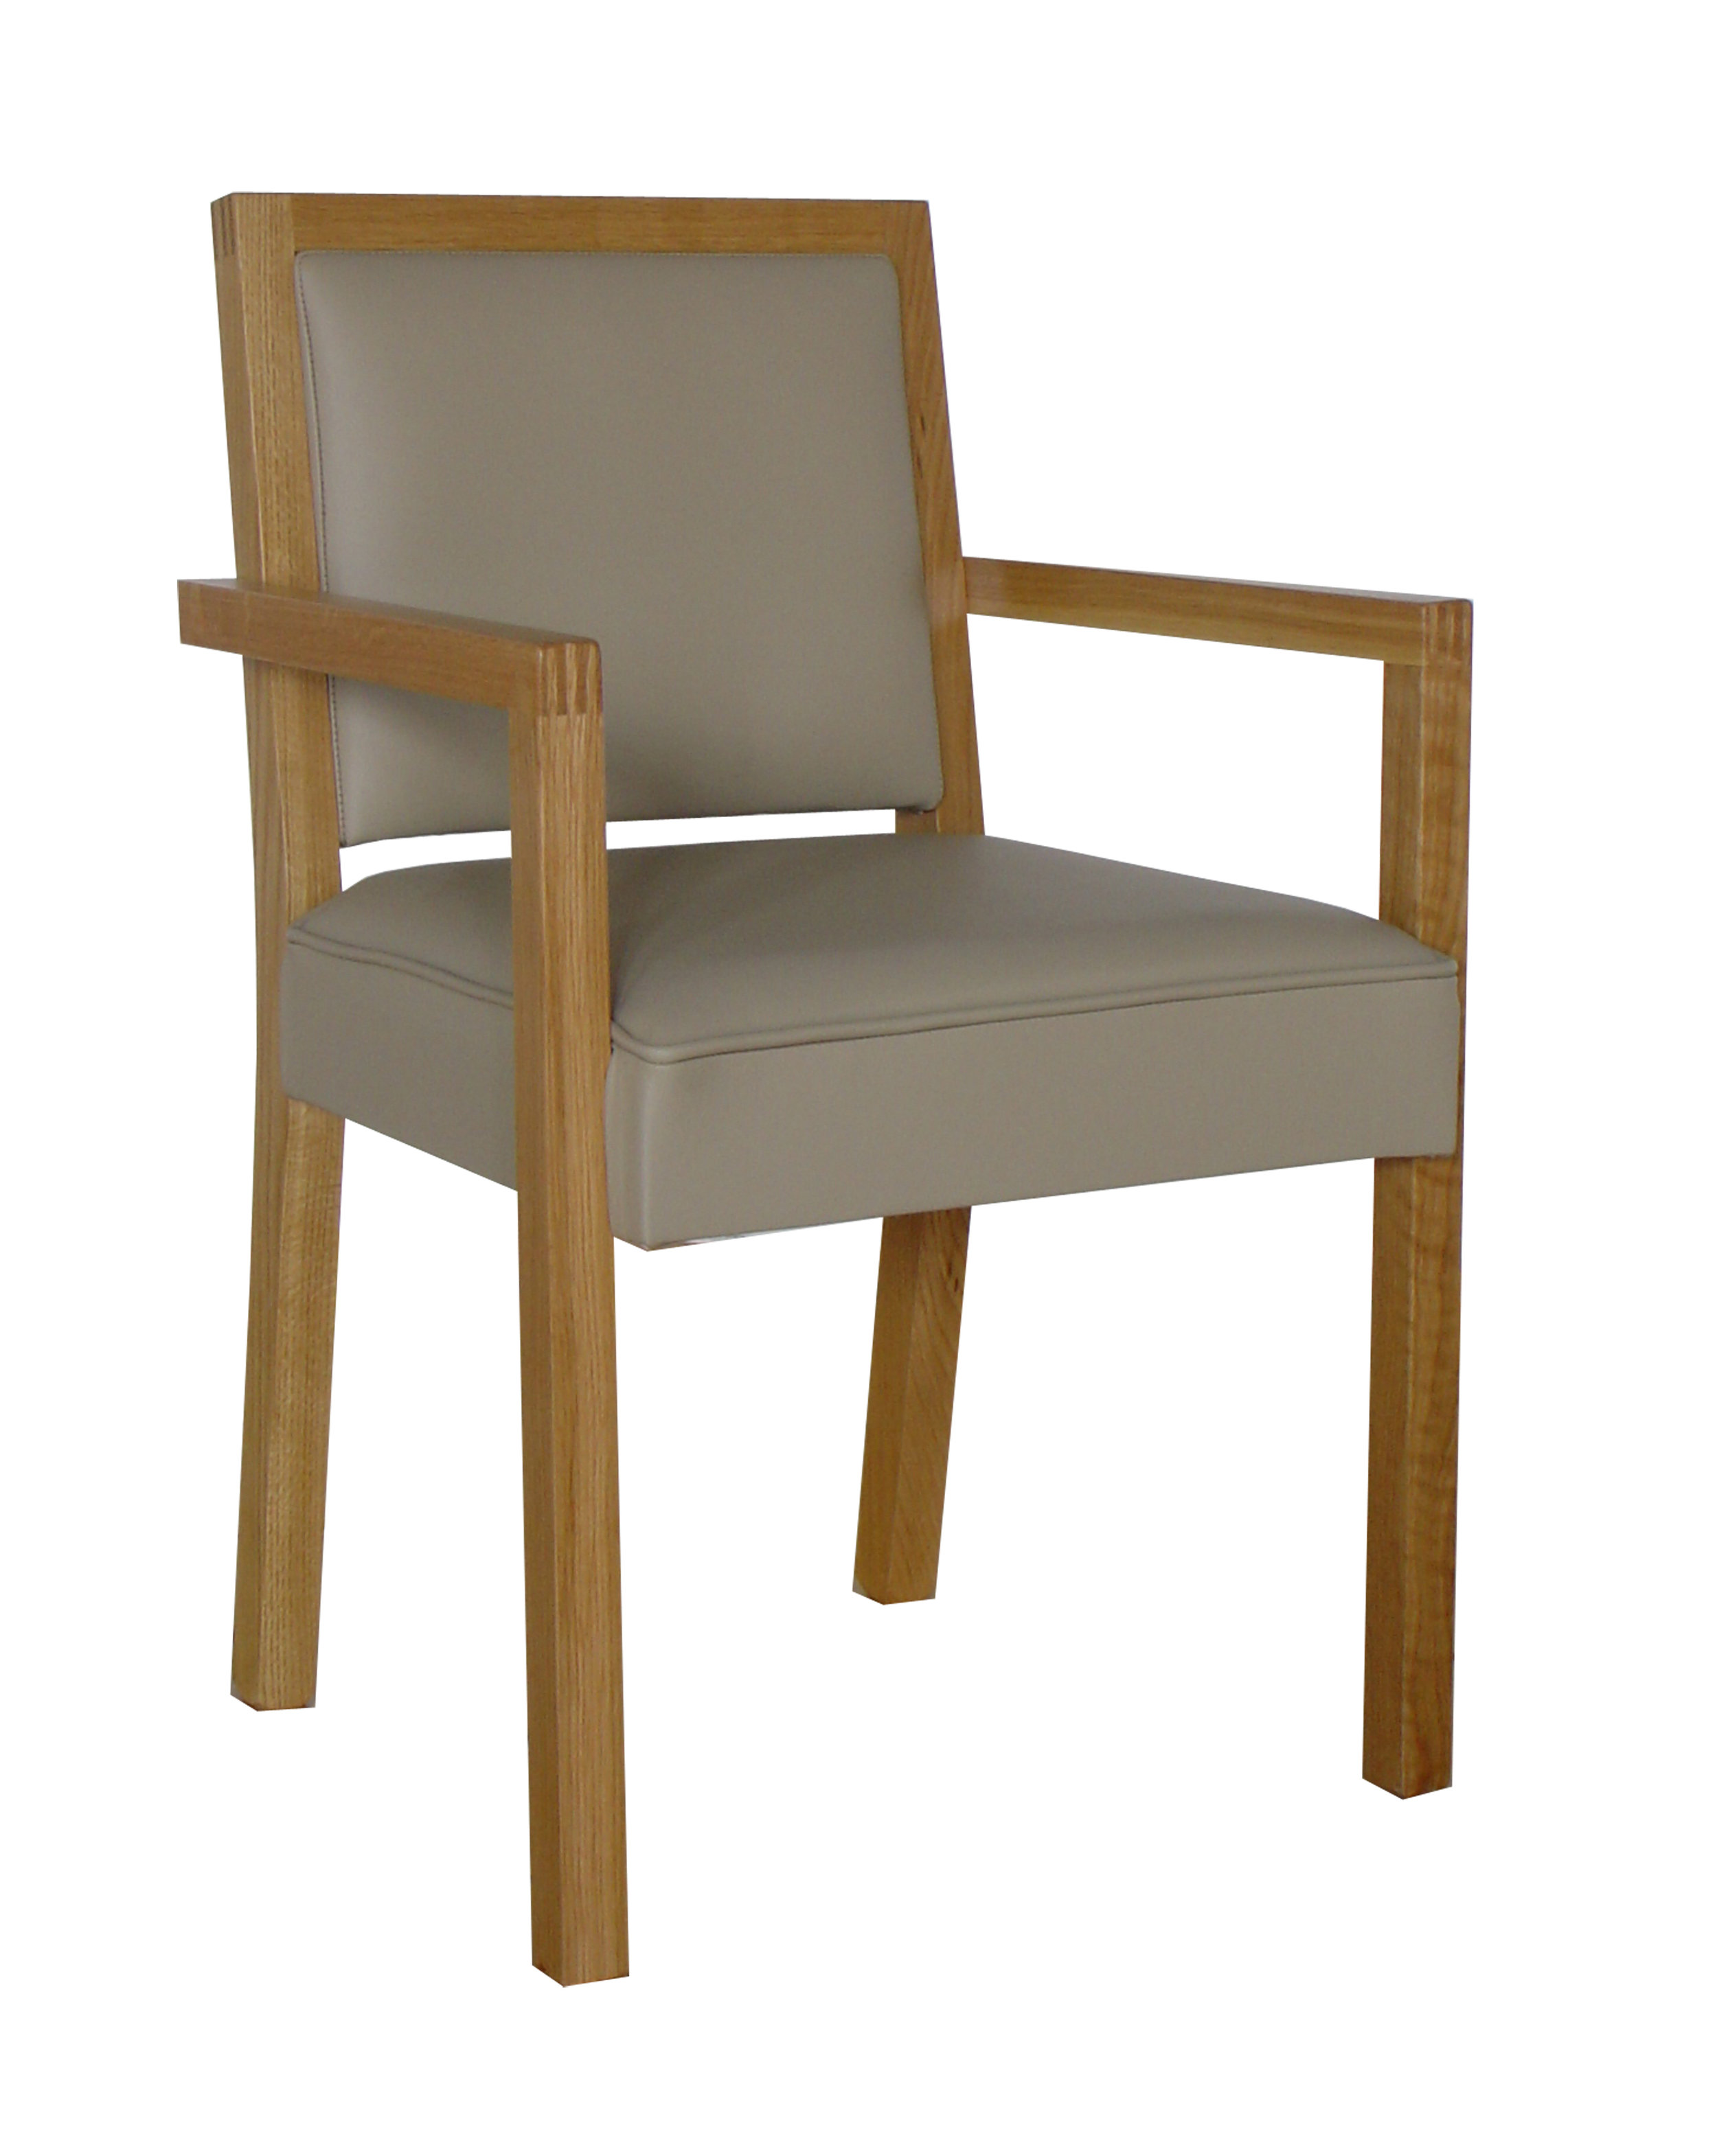 DC Armchair - Fully Upholstered.jpg